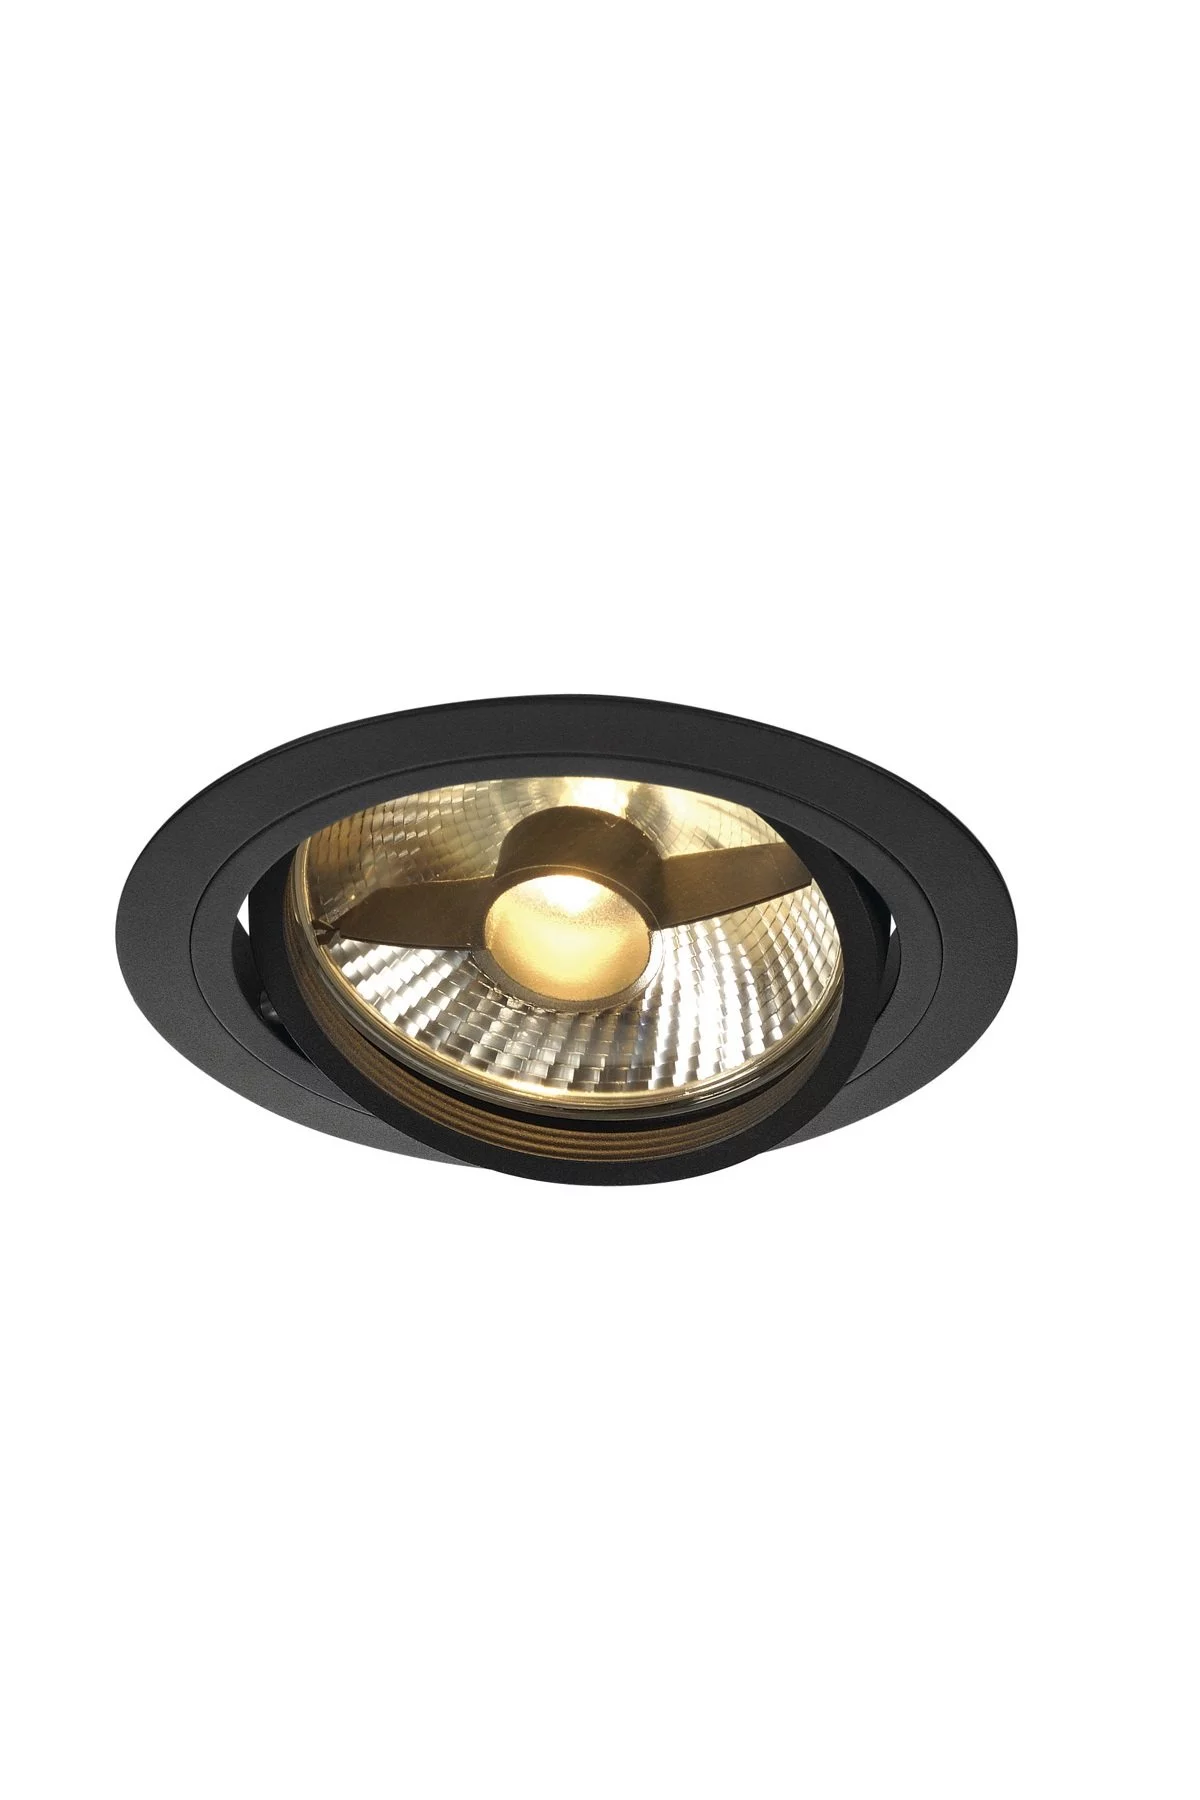   
                        Точечный светильник SLV  (Германия) 86010    
                         в стиле хай-тек.  
                        Тип источника света: светодиодные led, галогенные.                         Форма: круг.                                                                          фото 1